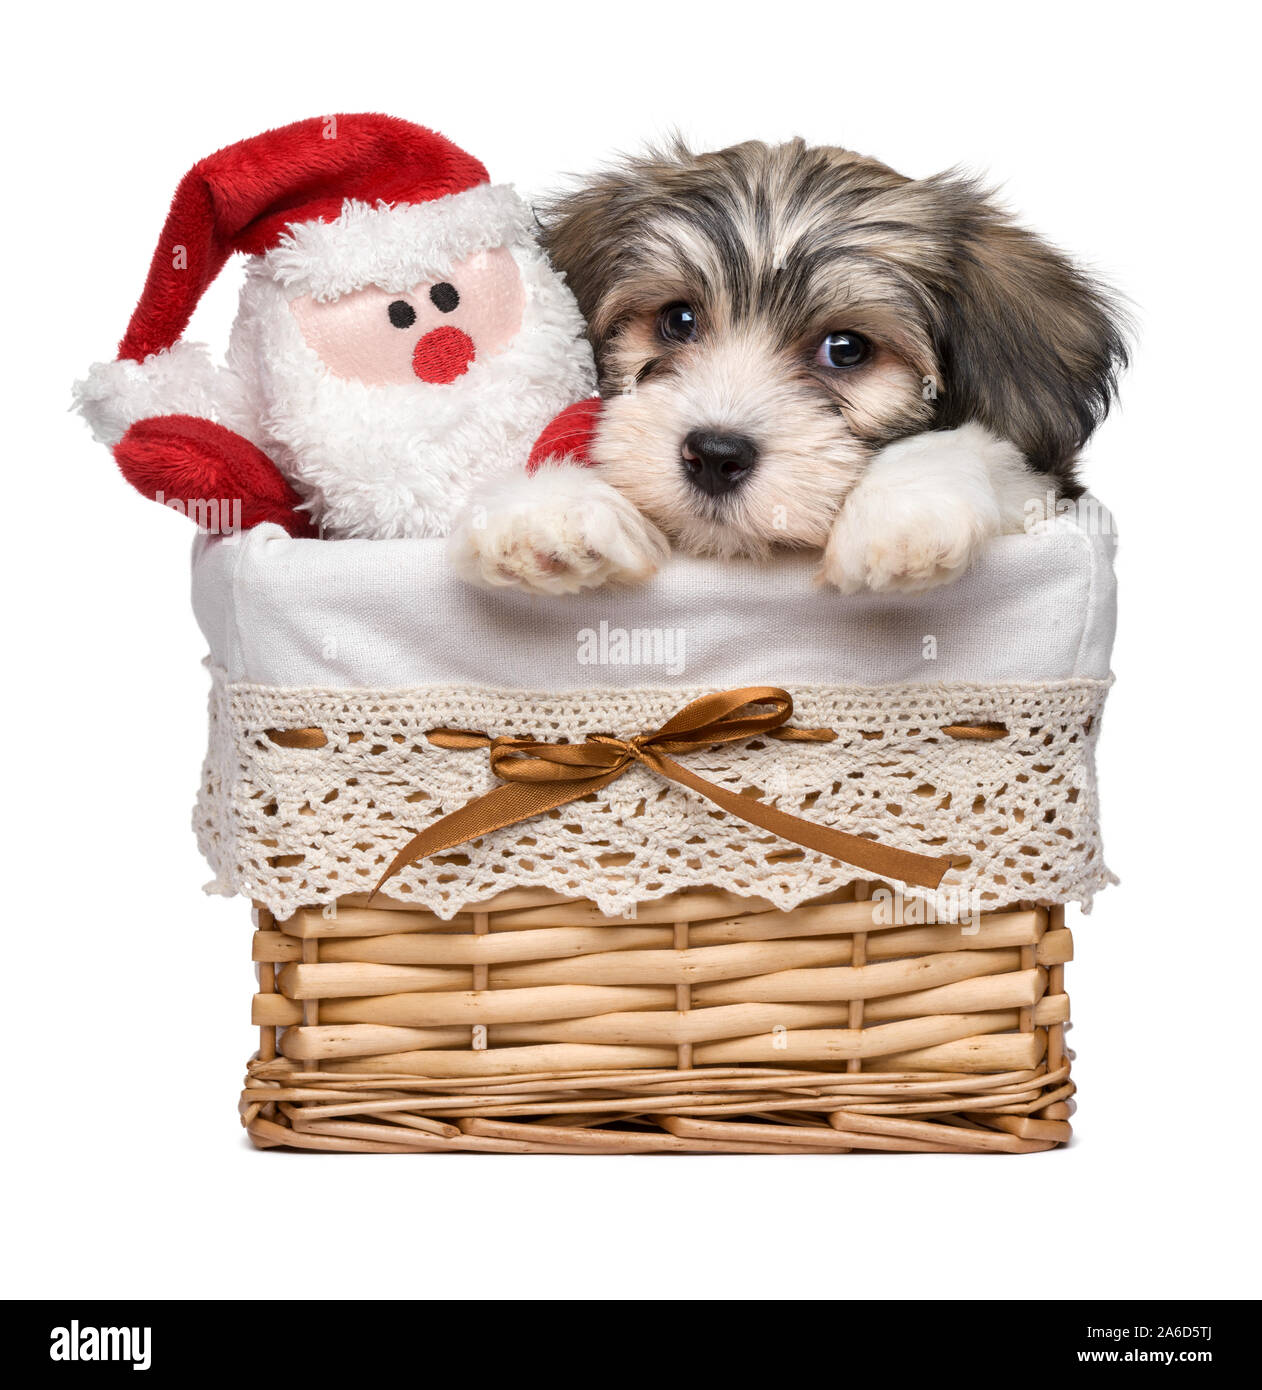 Carino Bichon Havanese cucciolo di cane in un cestello con un po' di Santa Claus il giocattolo di peluche - Isolato su sfondo bianco Foto Stock